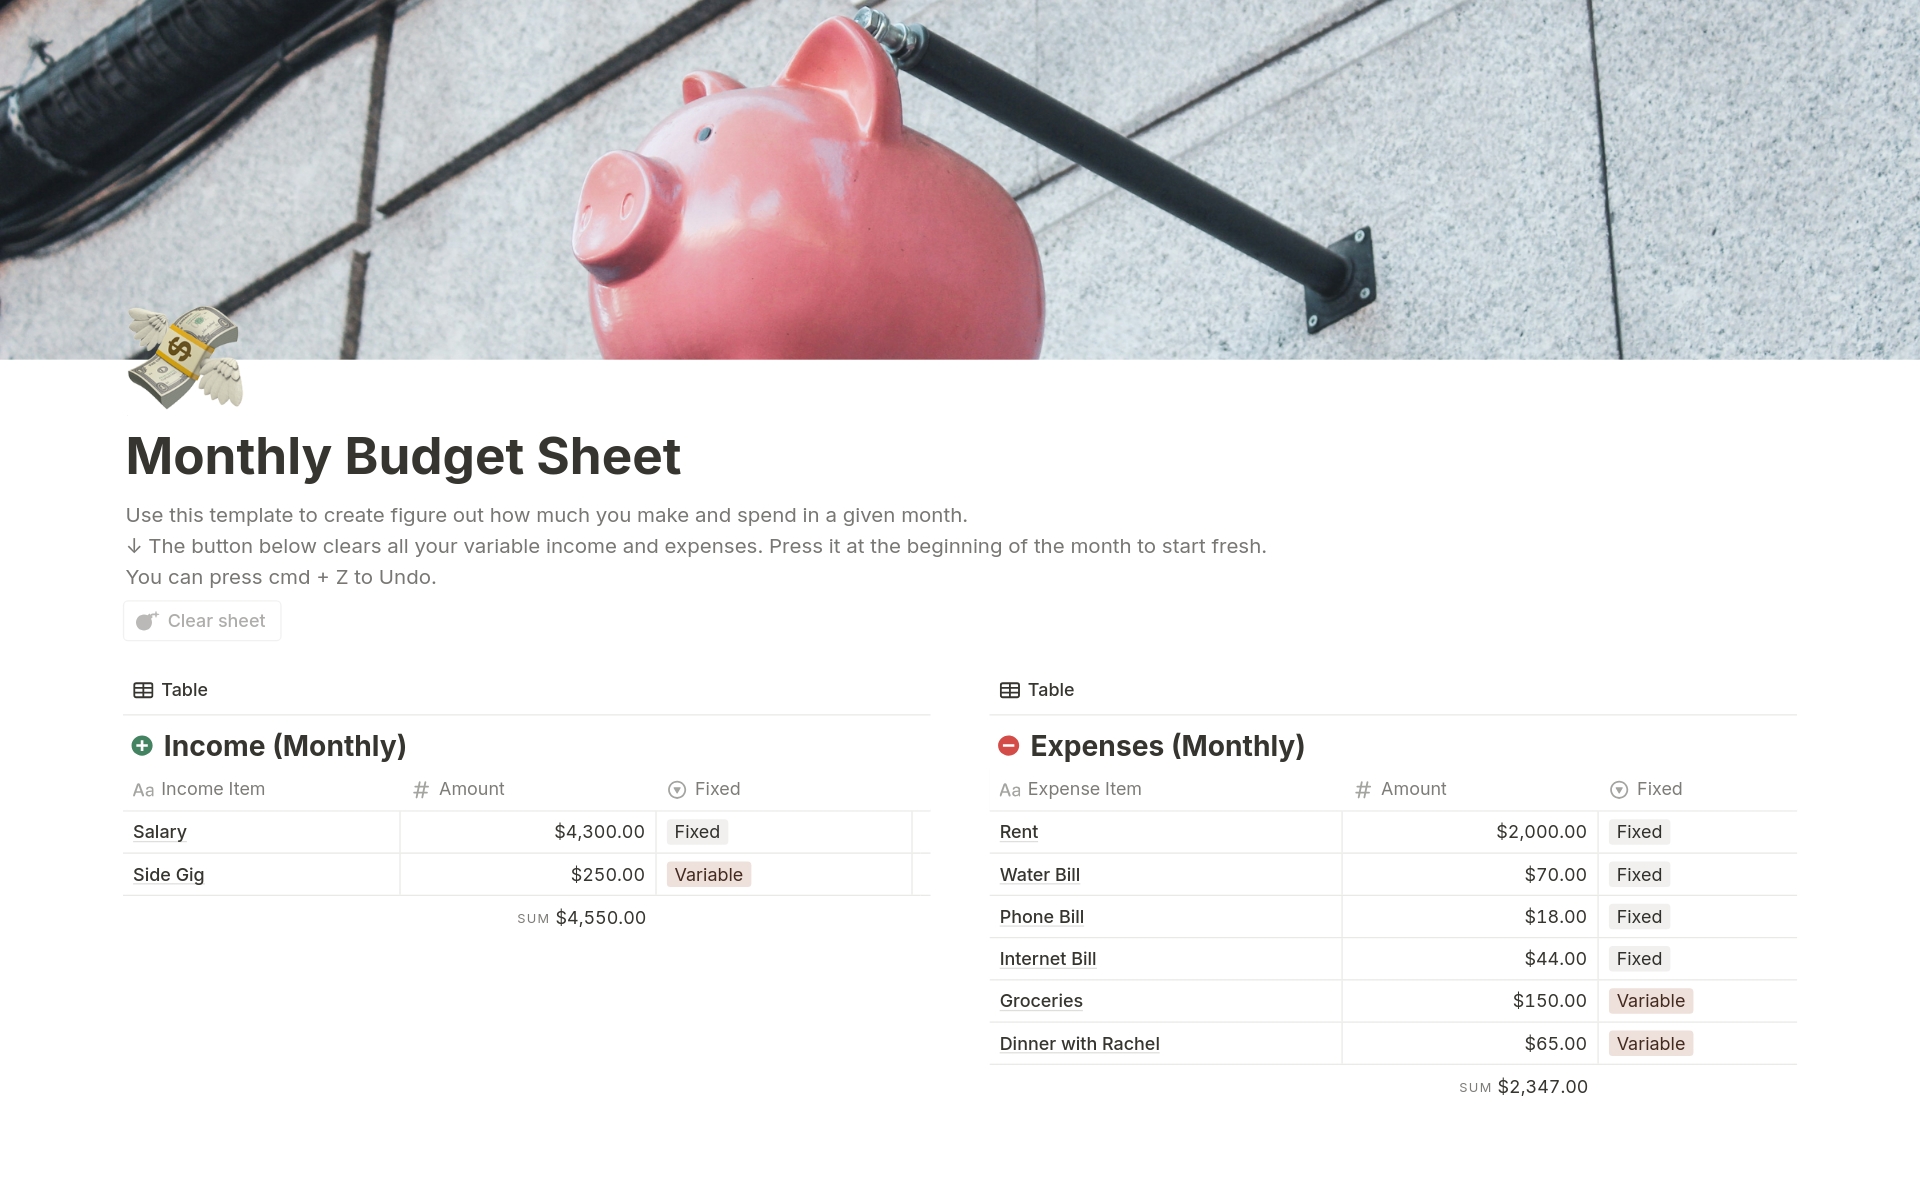 Monthly Budget Sheetのテンプレートのプレビュー